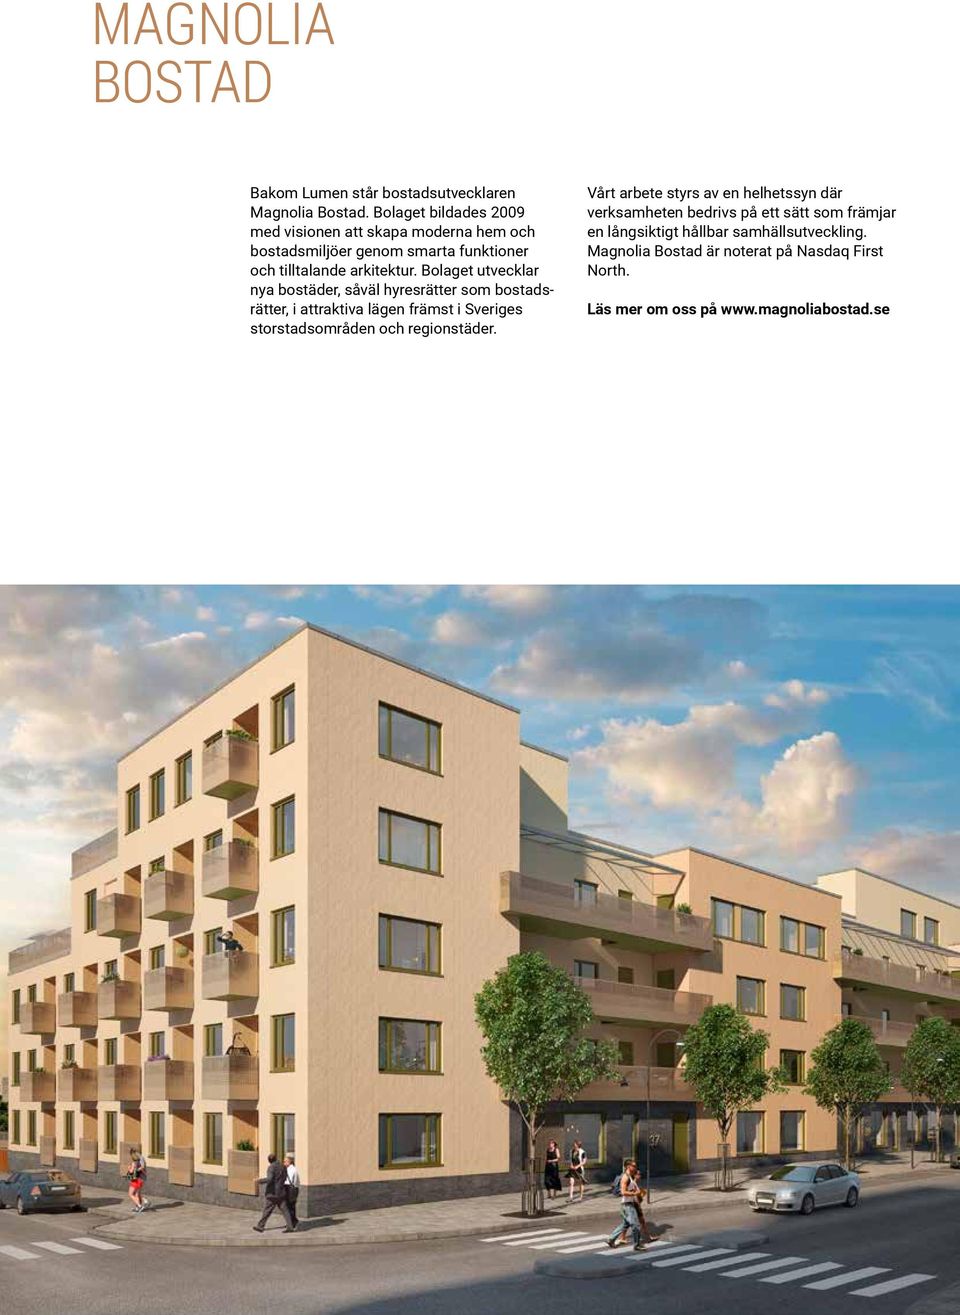 Bolaget utvecklar nya bostäder, såväl hyresrätter som bostadsrätter, i attraktiva lägen främst i Sveriges storstadsområden och